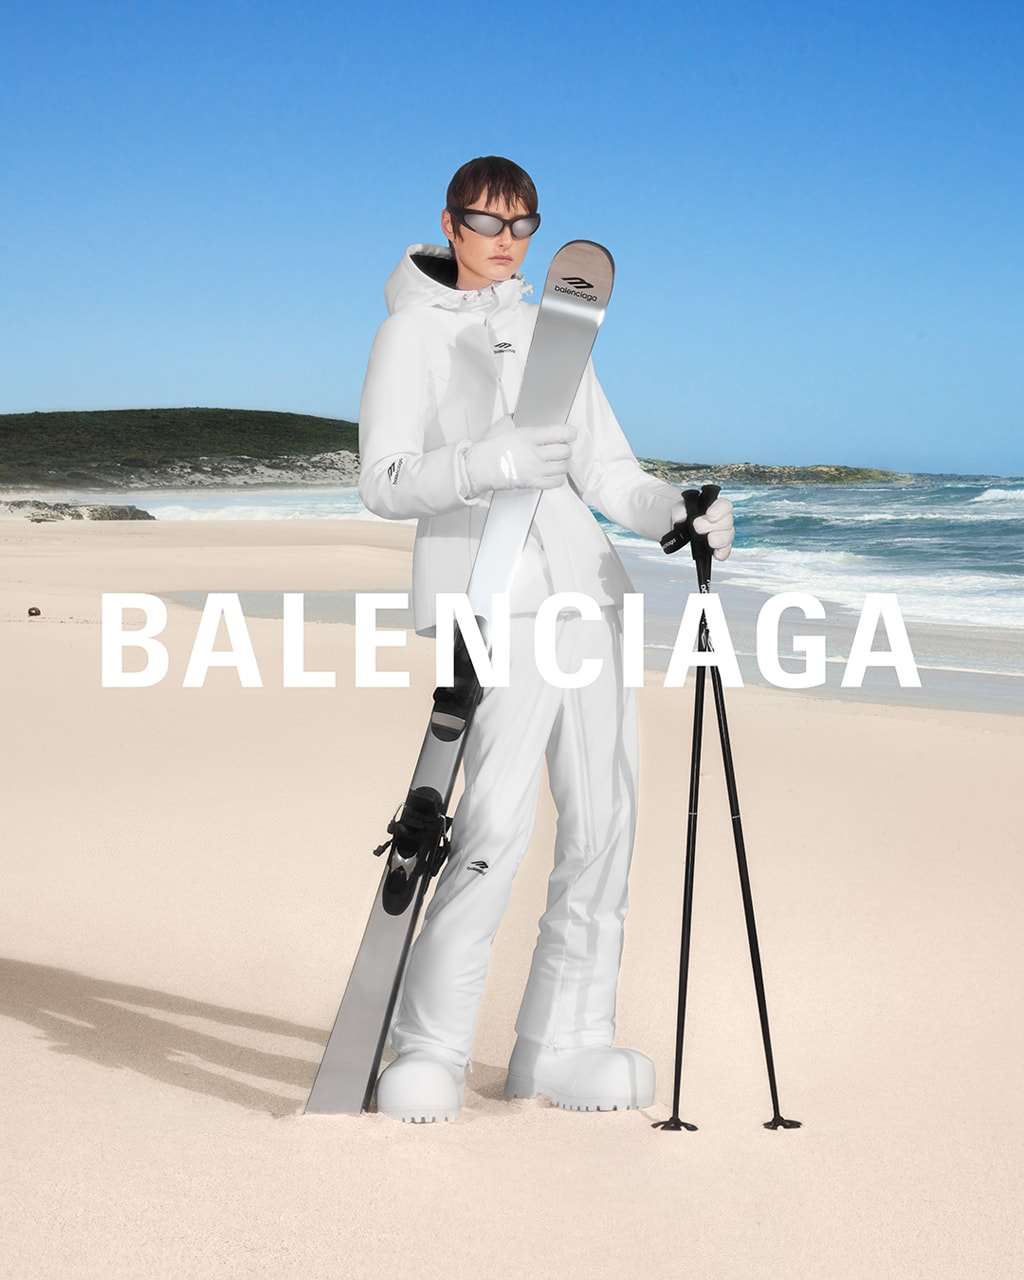 バレンシアガが初の“スキーウェア”コレクションをローンチ Balenciaga Unveils First-Ever Skiwear Collection